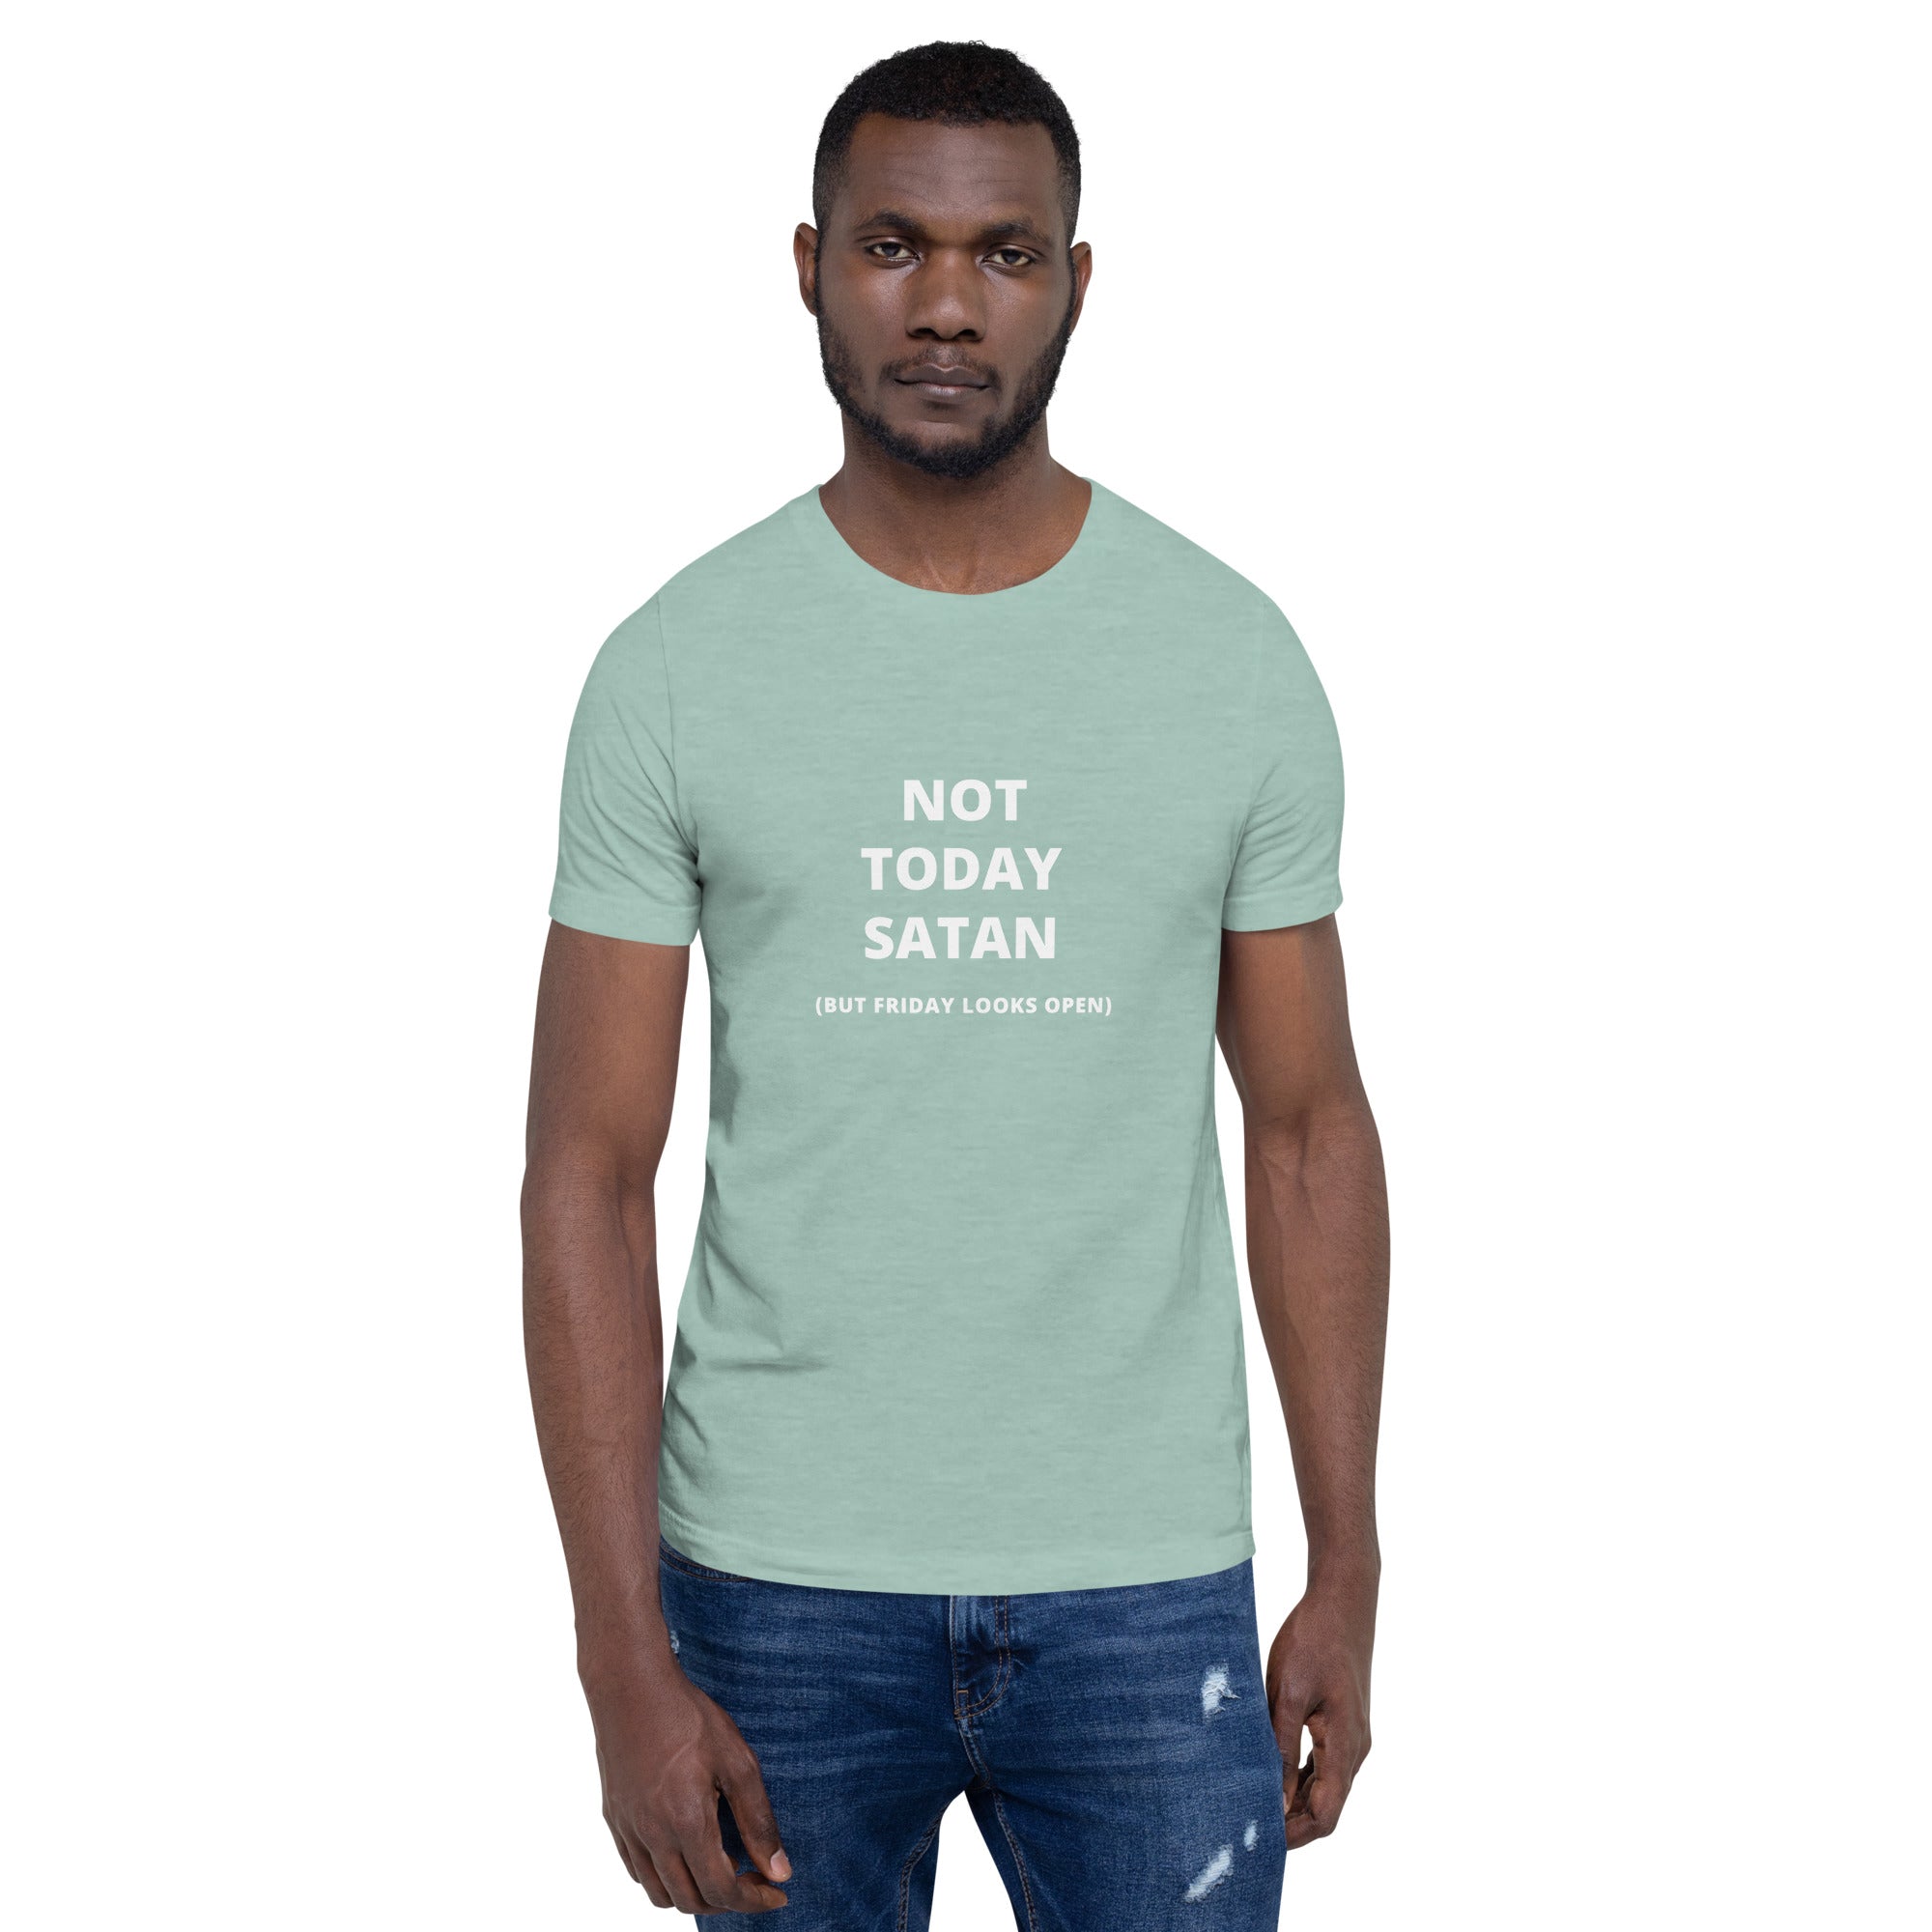 Not today satan t-shirt